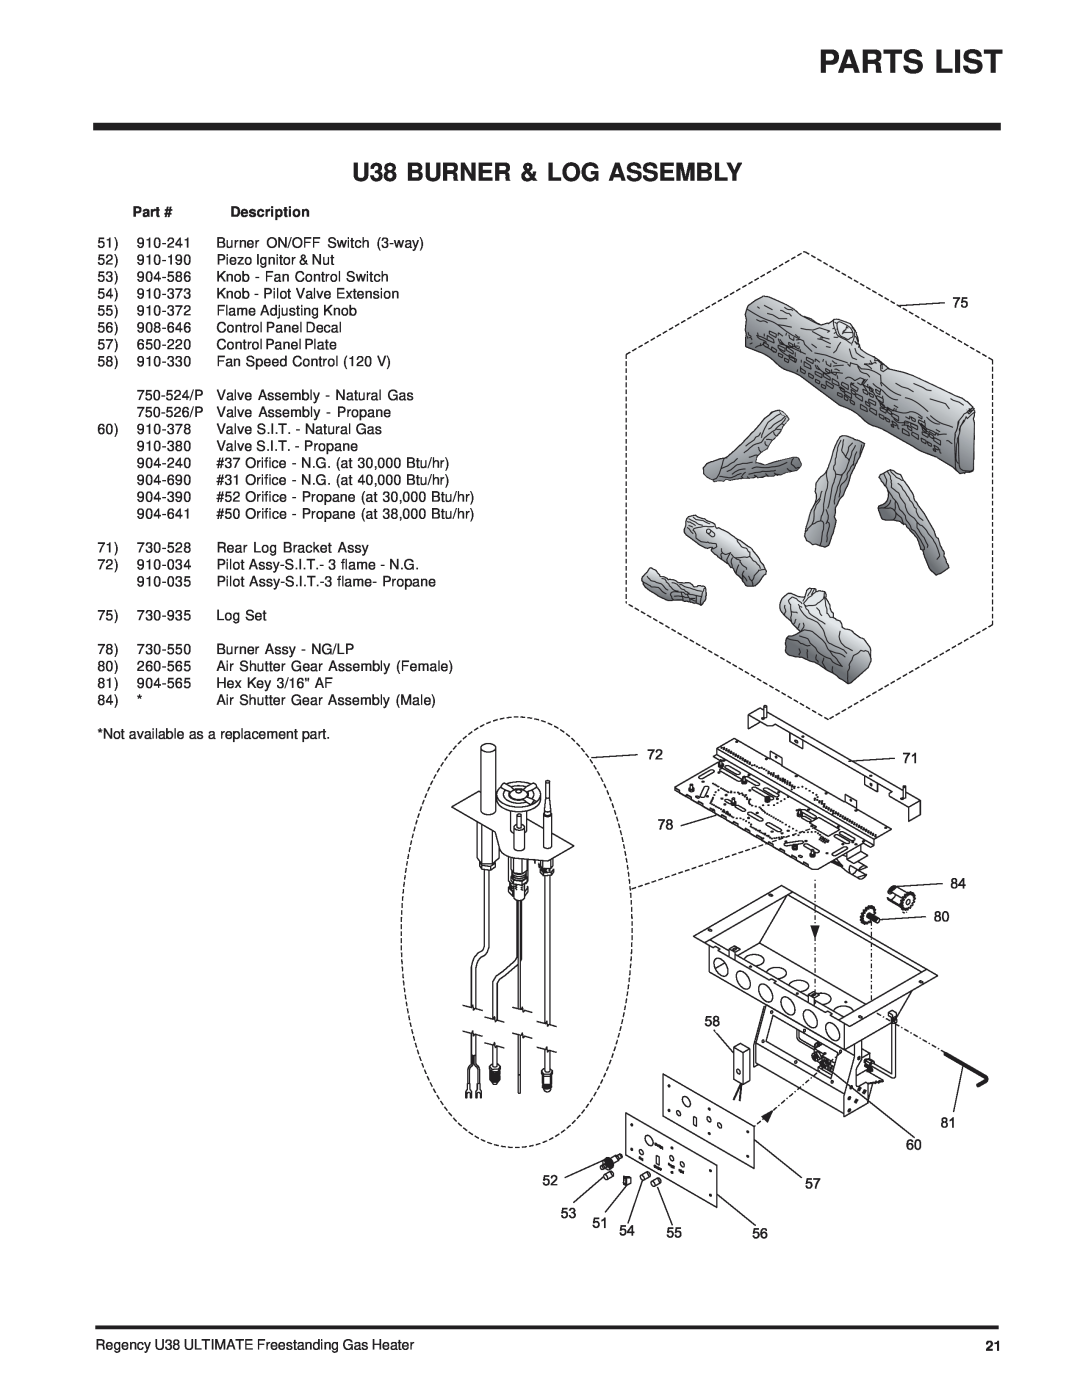 Regency Wraps U38-LP, U38-NG installation manual Parts List, U38 BURNER & LOG ASSEMBLY 